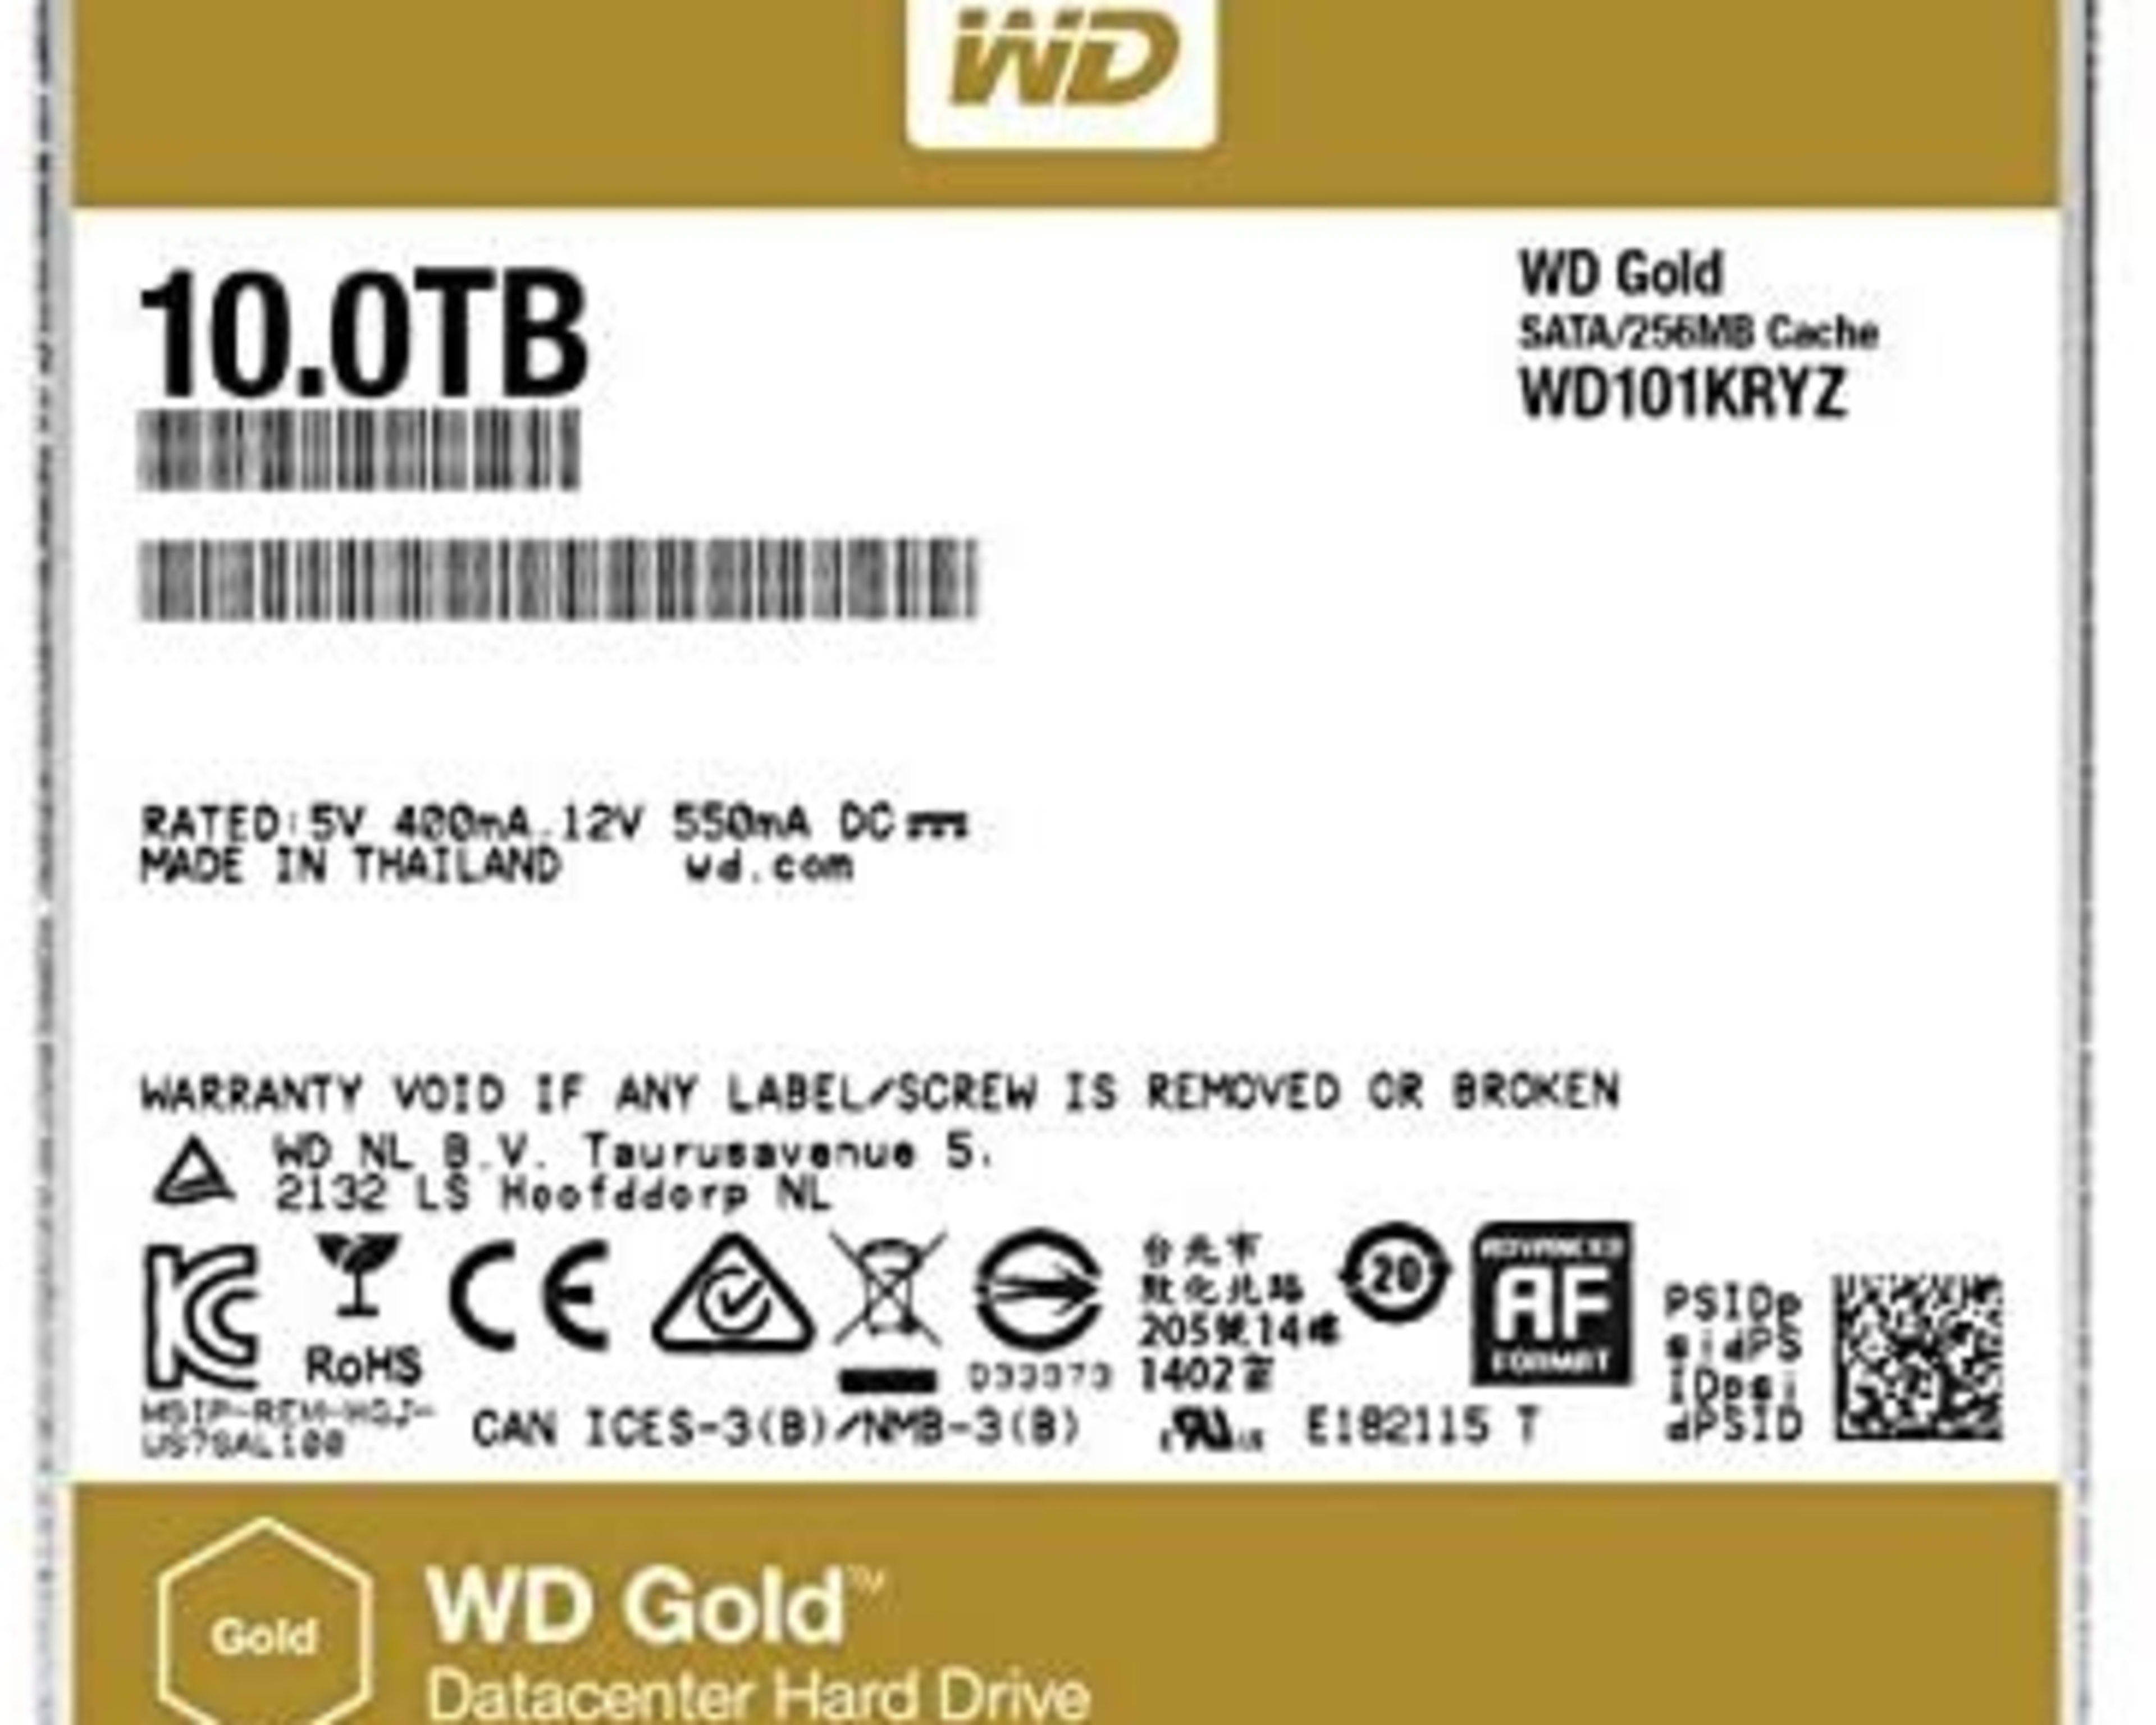 WD Gold 10TB Enterprise Class Hard Disk Drive - WD101KRYZ